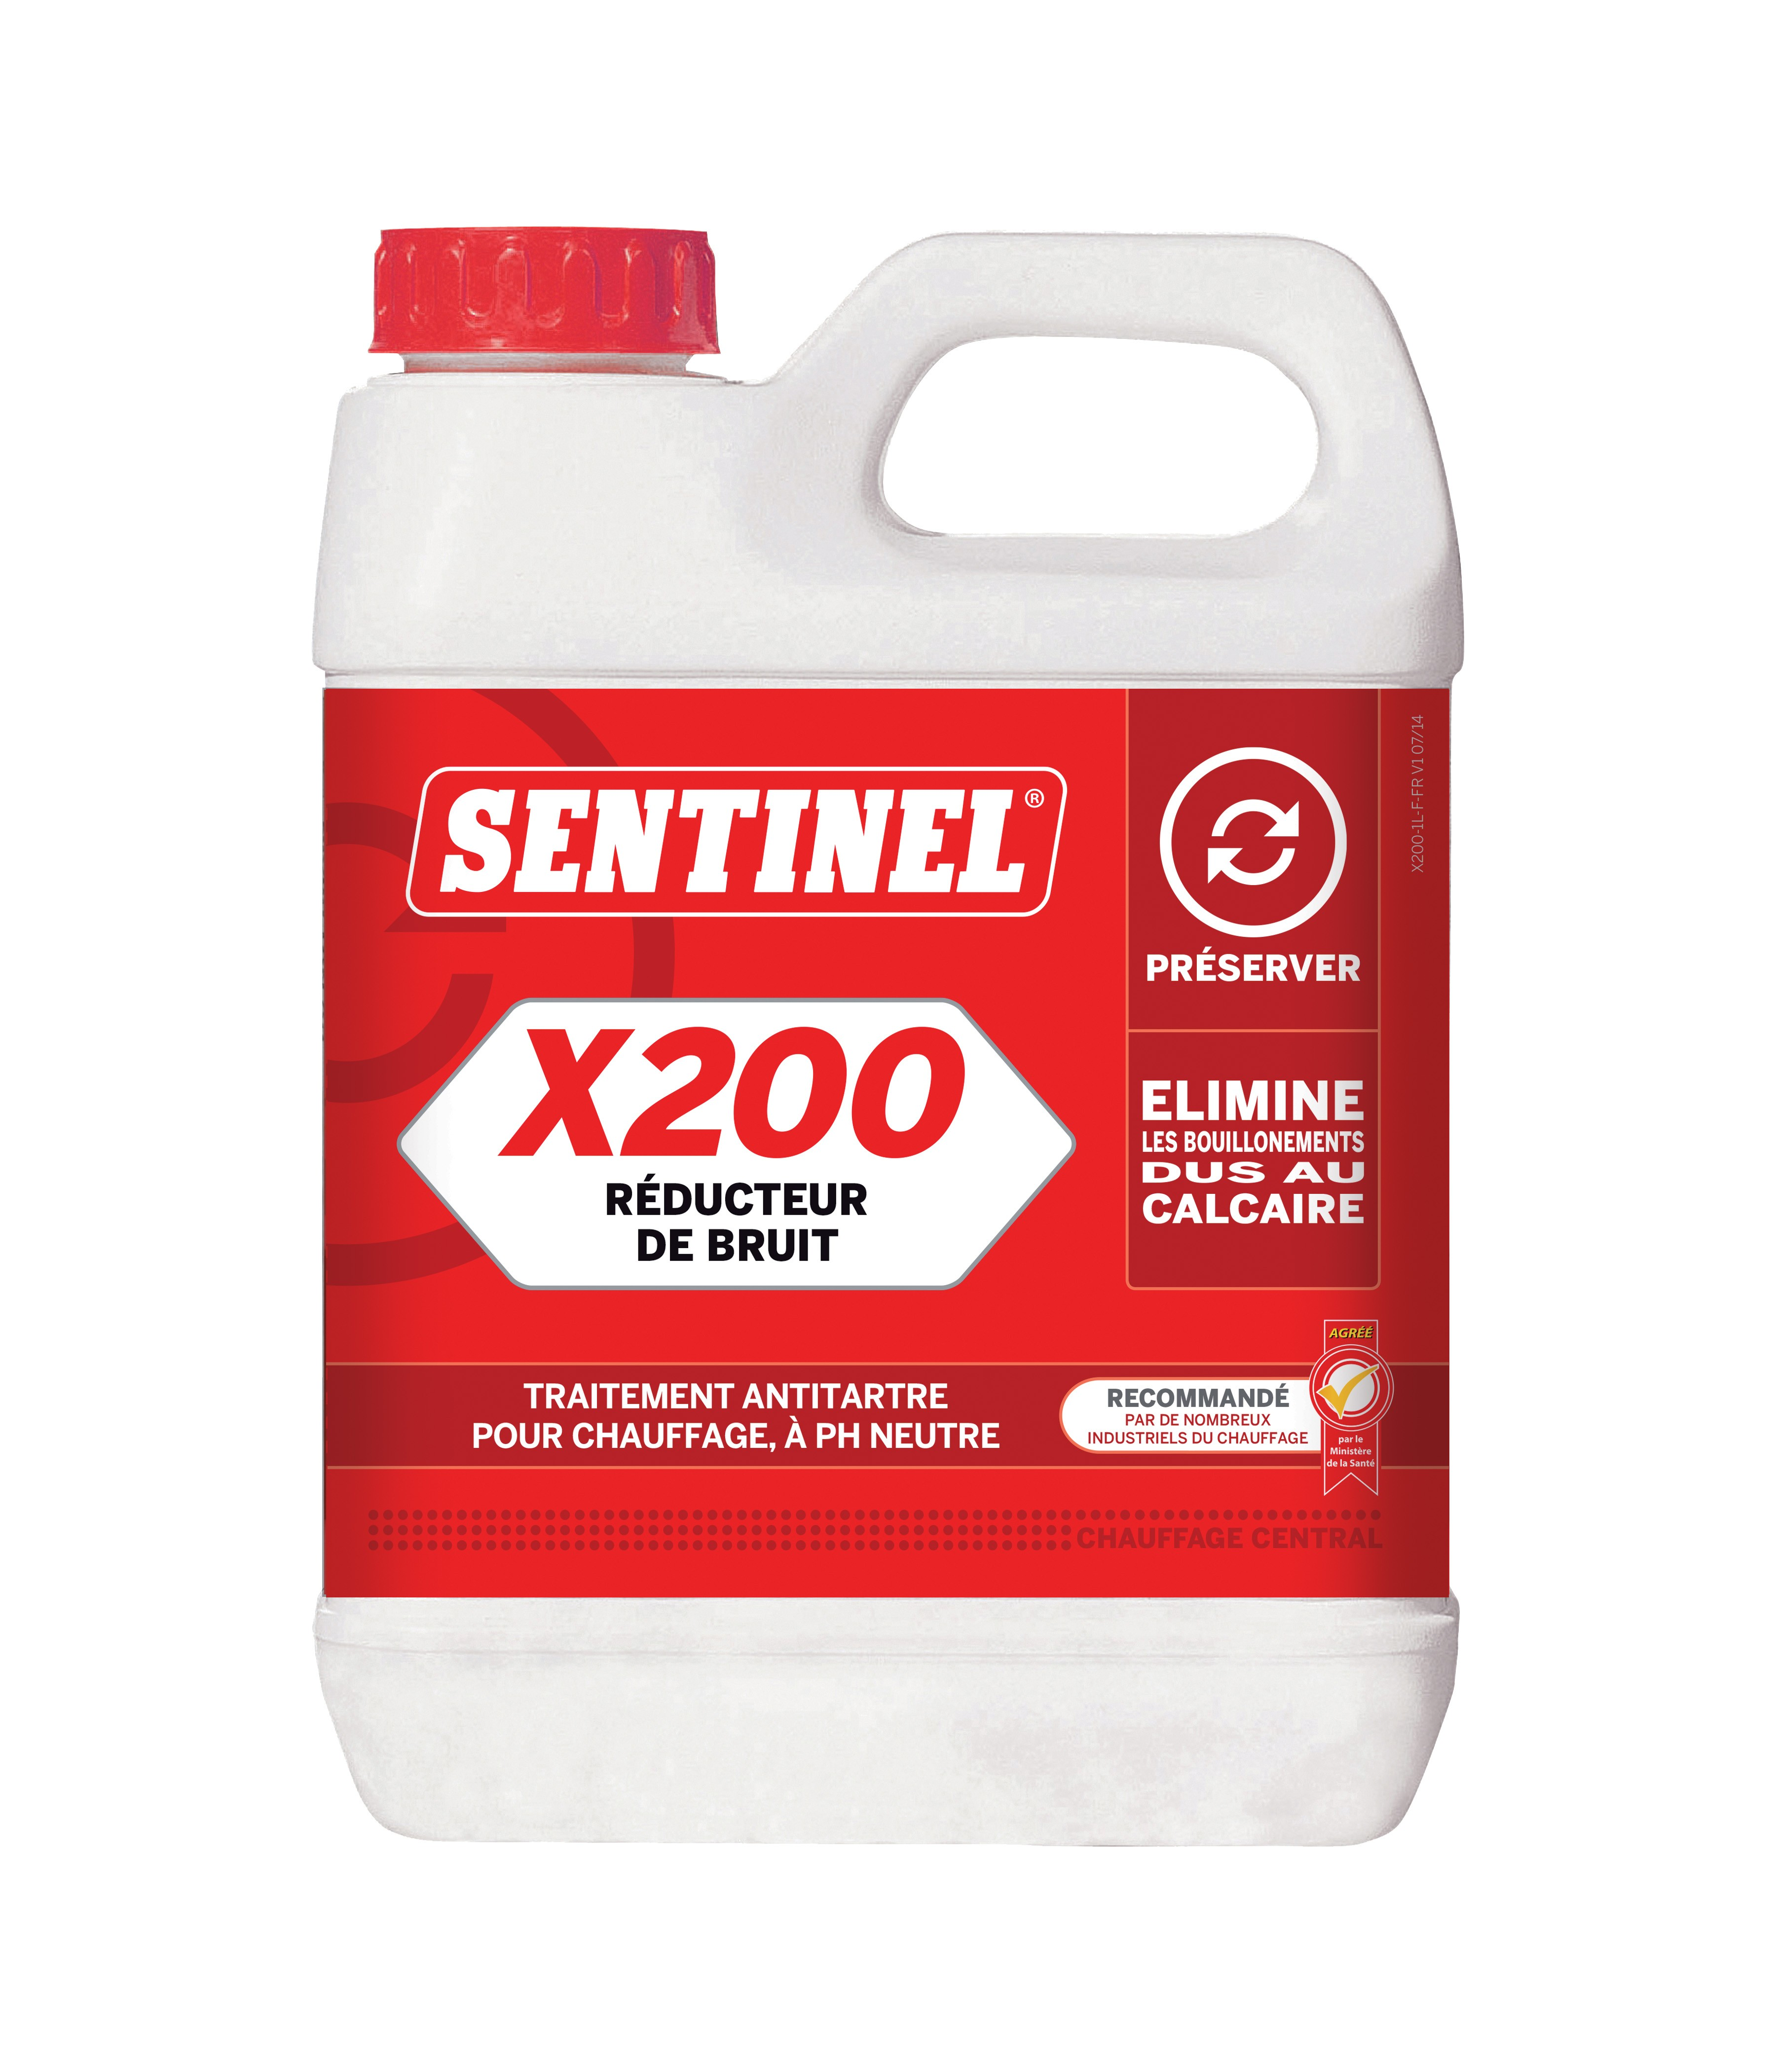 Sentinel X 200 réducteur de bruit, 1 litre